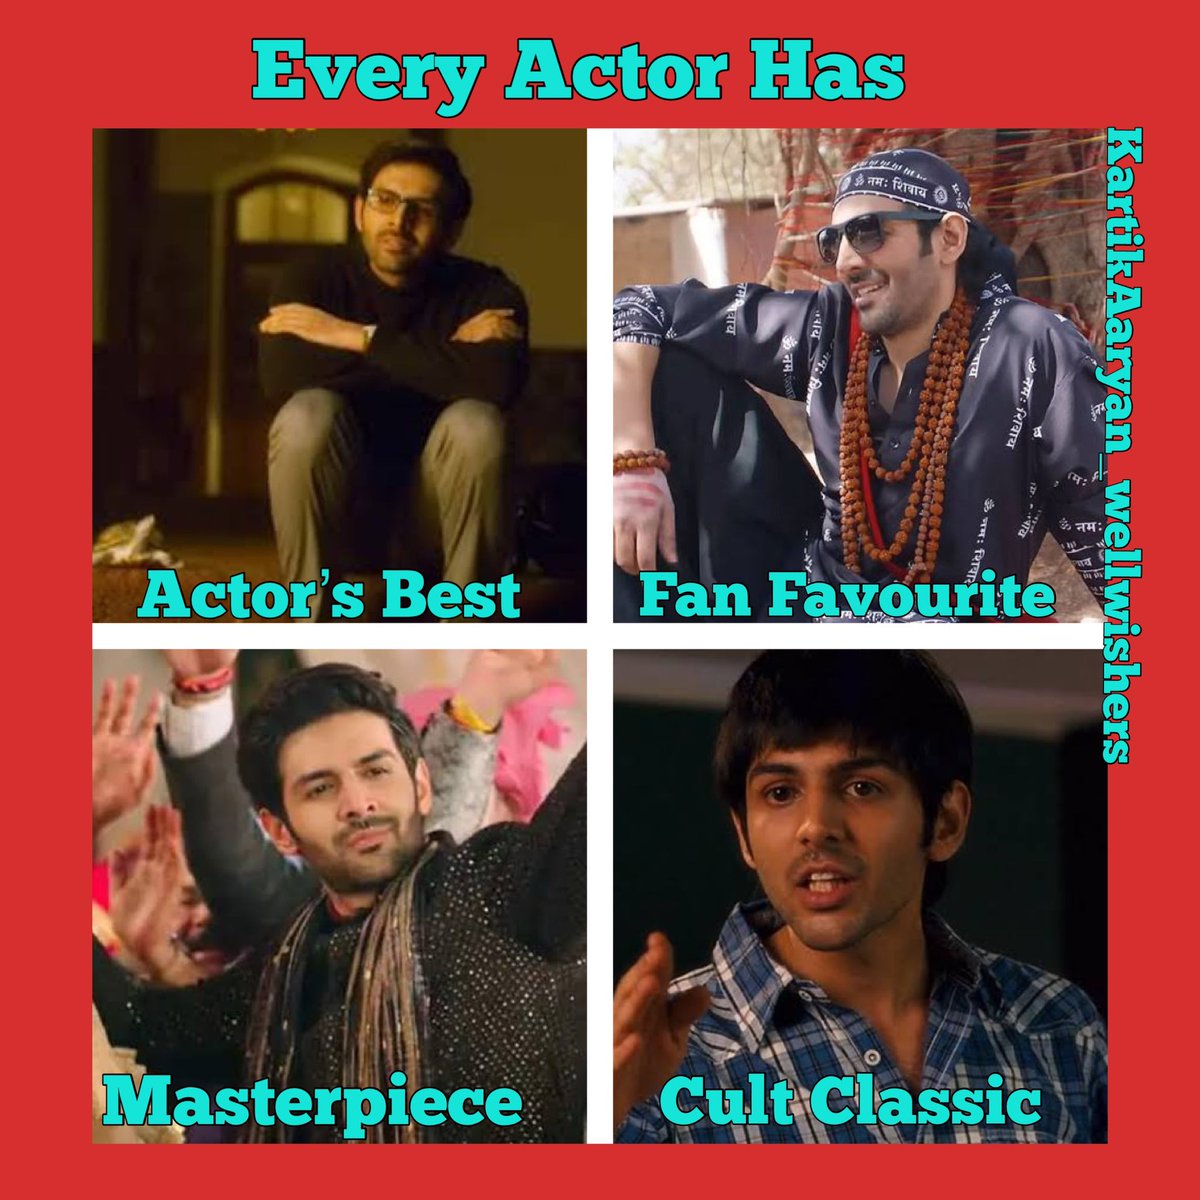 Every Actor Had 

Actors Best - #freddy 🍎 
fan Favourite - #BhoolBhulaiyaa2 👻 
masterpiece - #SKTKT 😍
Cult Classic - #PKP ♥️

@TheAaryanKartik the best actor in town ❤️‍🔥❤️‍🔥❤️‍🔥❤️‍🔥 #KartikAaryan